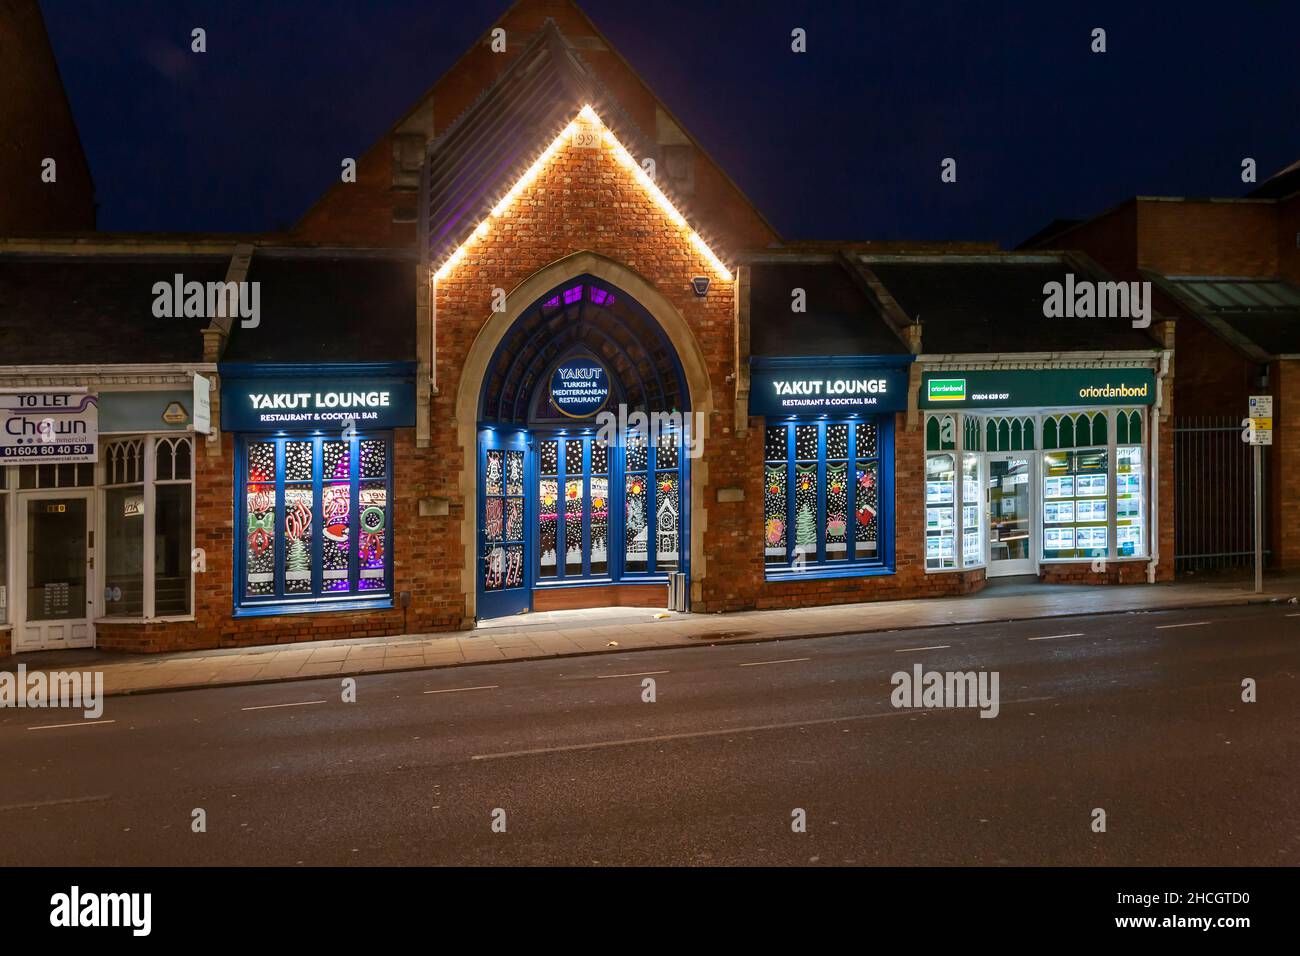 Die Yakut Lounge und die Geschäfte lassen sich am frühen Morgen auf der Wellingborough Road, Northampton, England, Großbritannien, erhellen Stockfoto